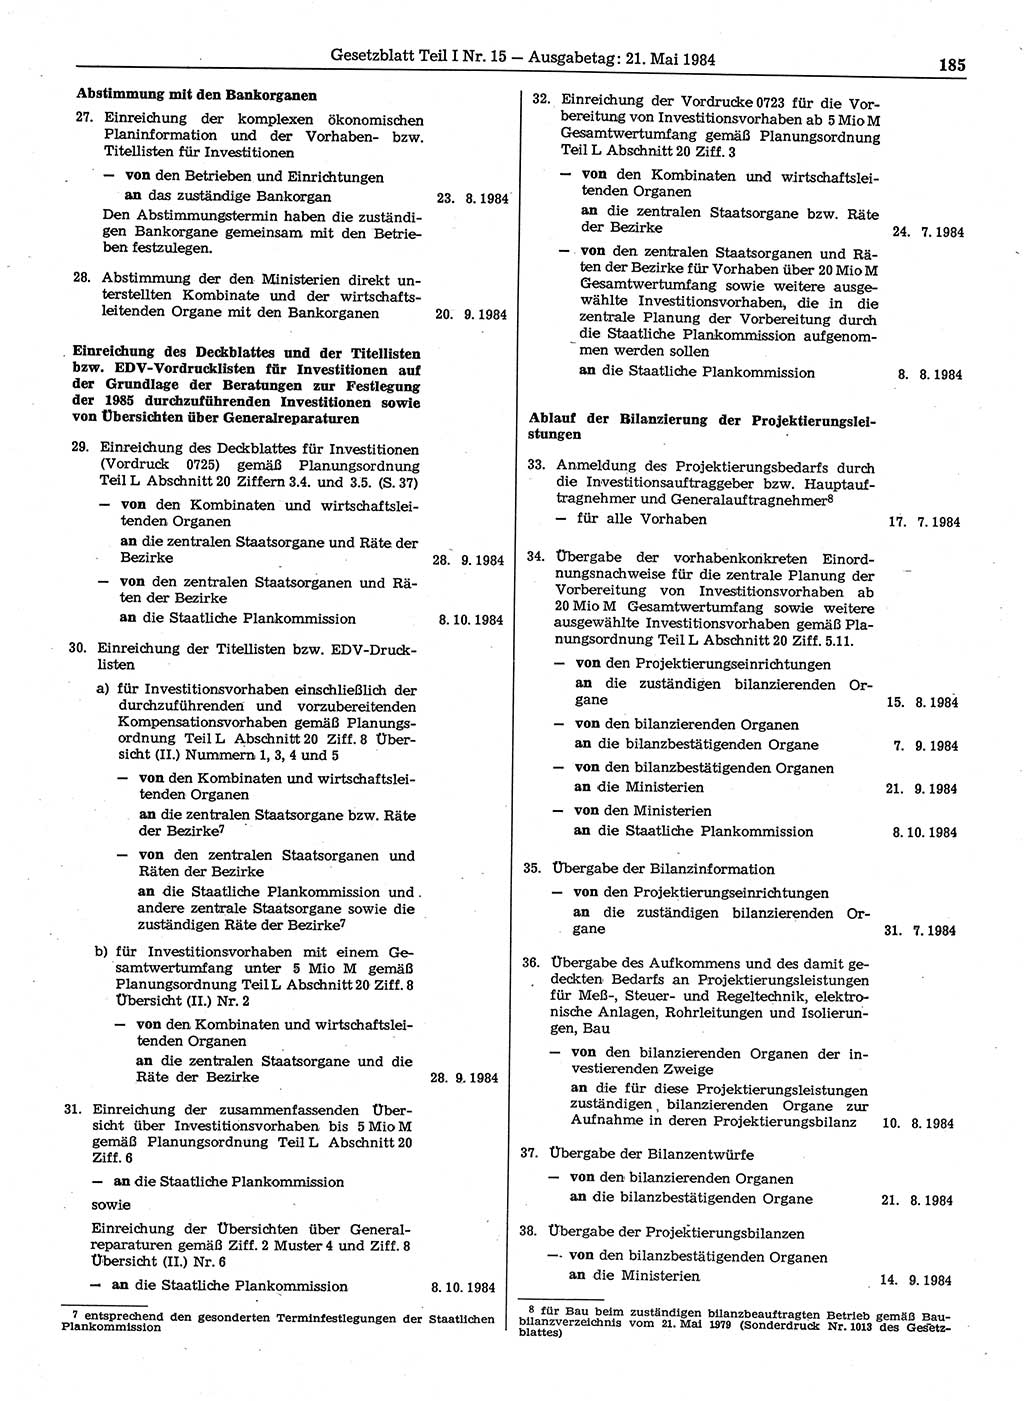 Gesetzblatt (GBl.) der Deutschen Demokratischen Republik (DDR) Teil Ⅰ 1984, Seite 185 (GBl. DDR Ⅰ 1984, S. 185)